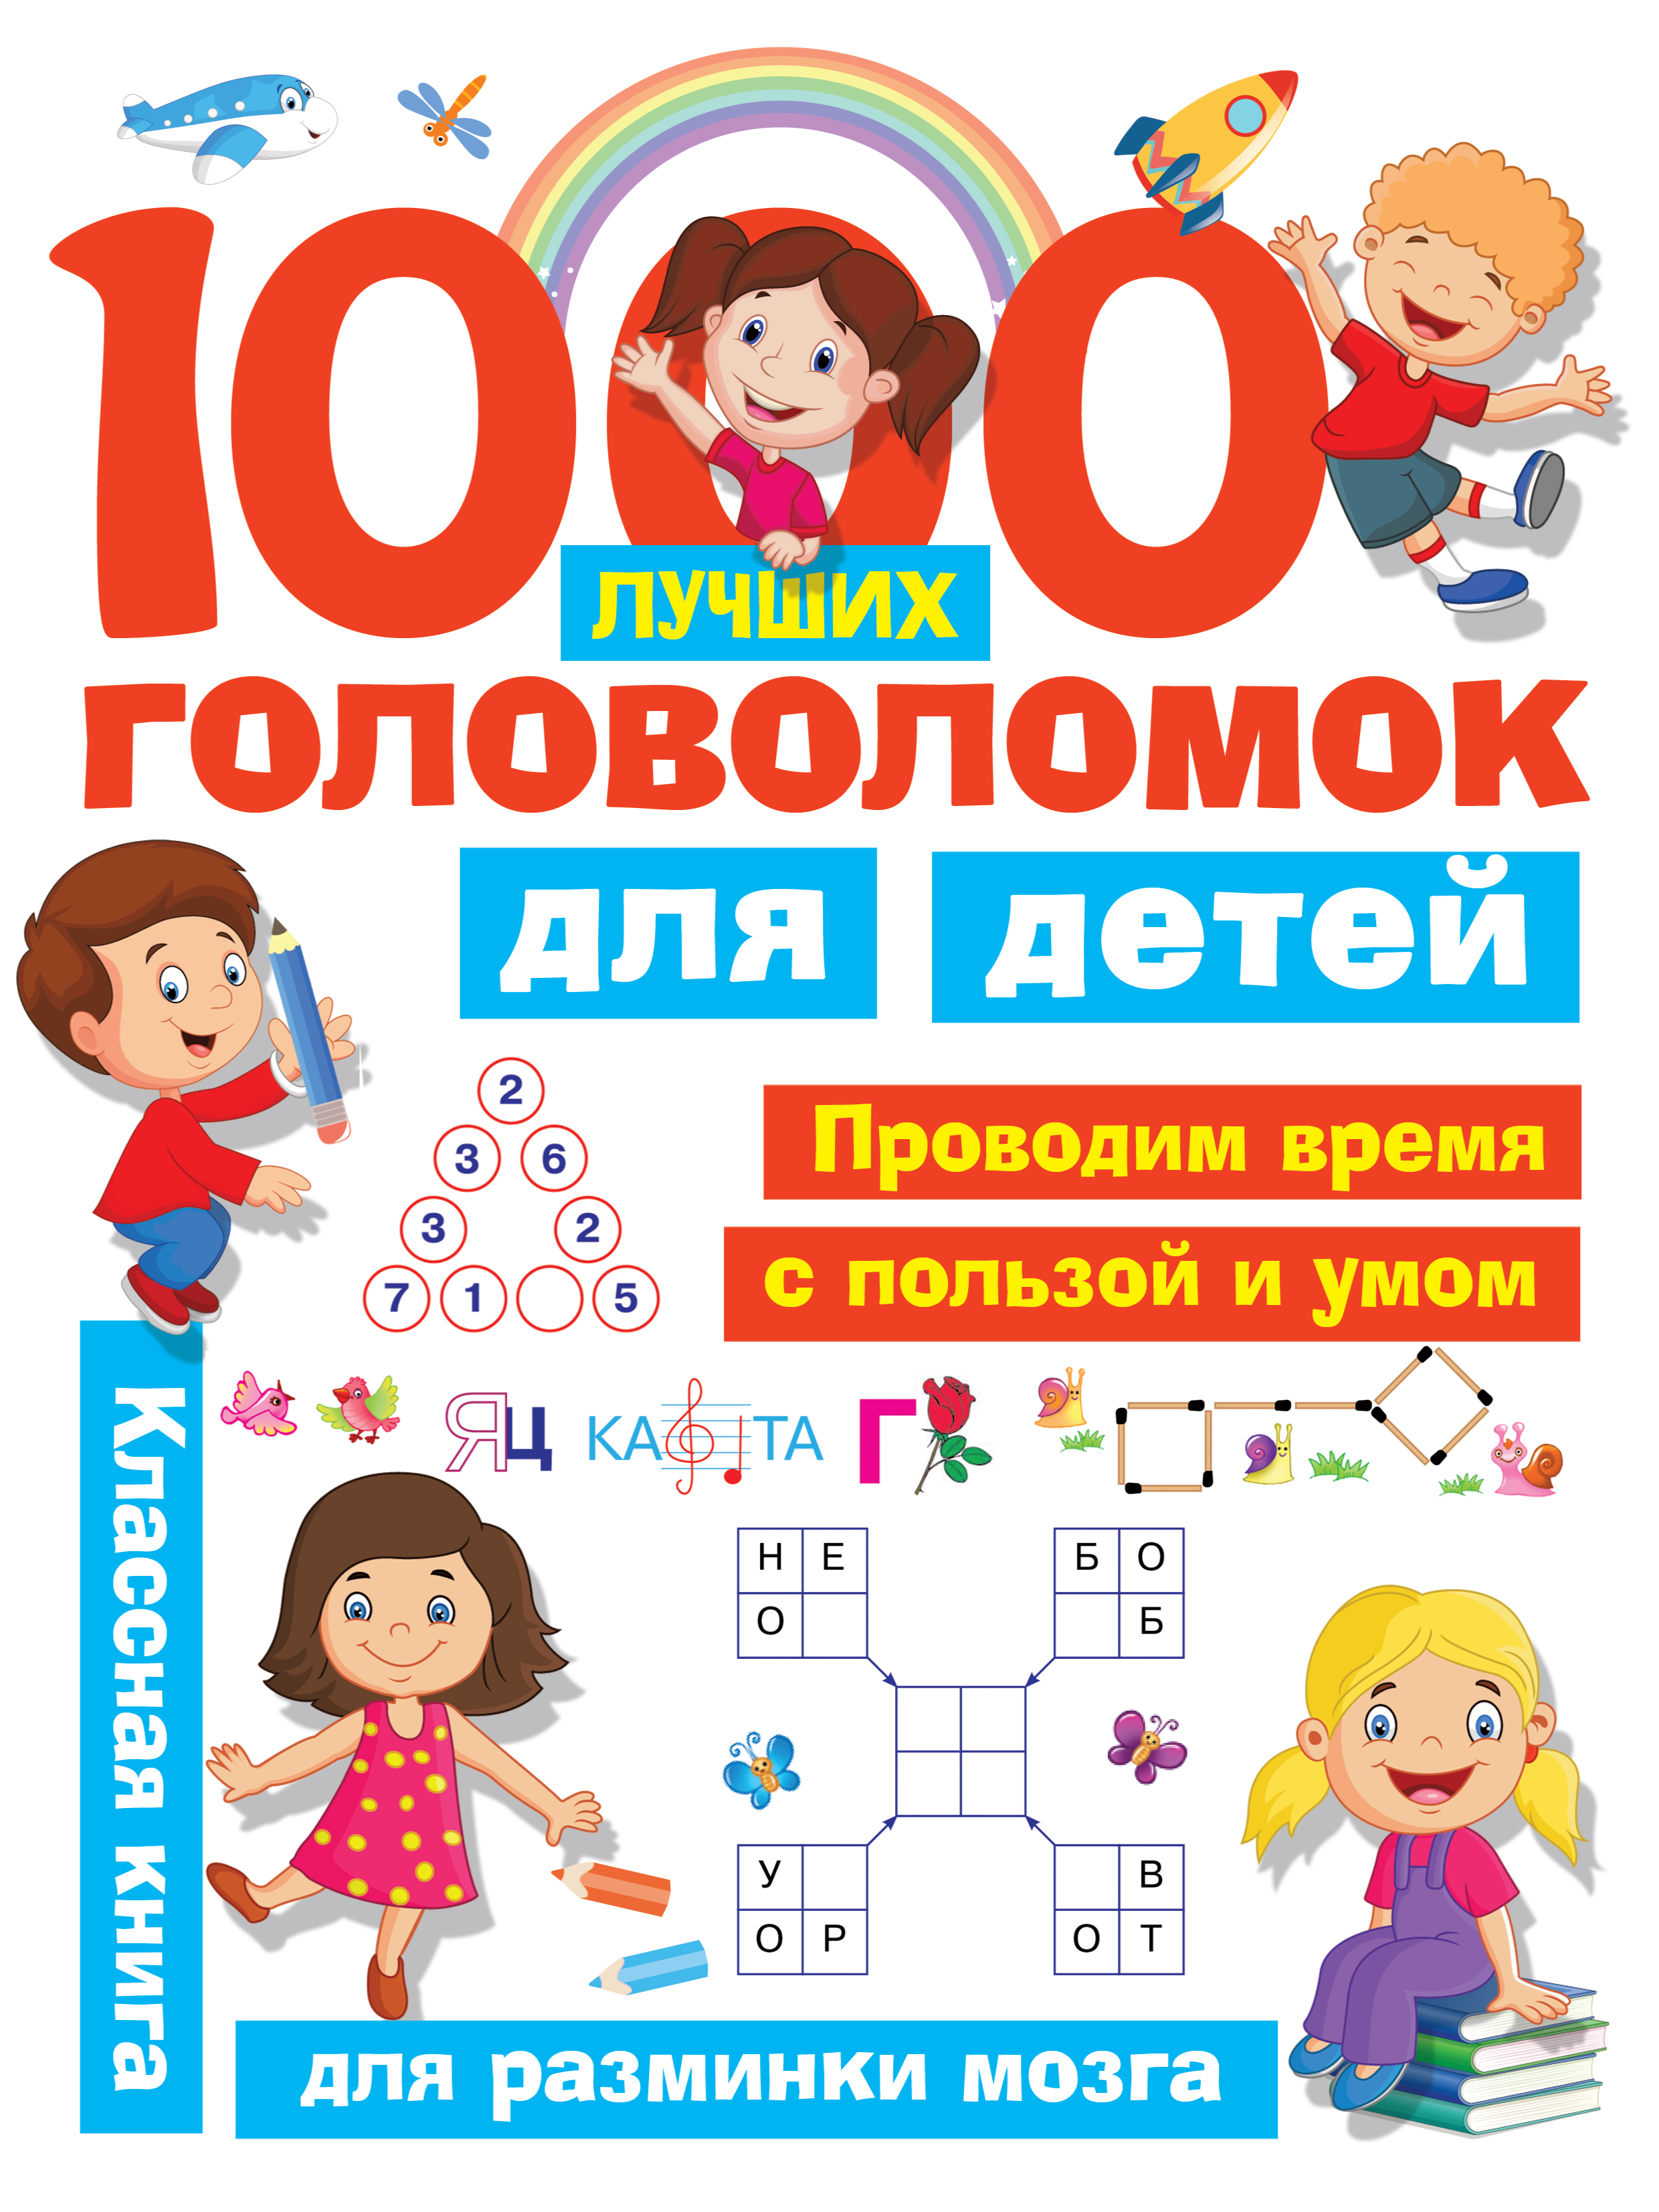 1000 лучших головоломок для детей 1000 лучших головоломок для детей дмитриева в г горбунова и в